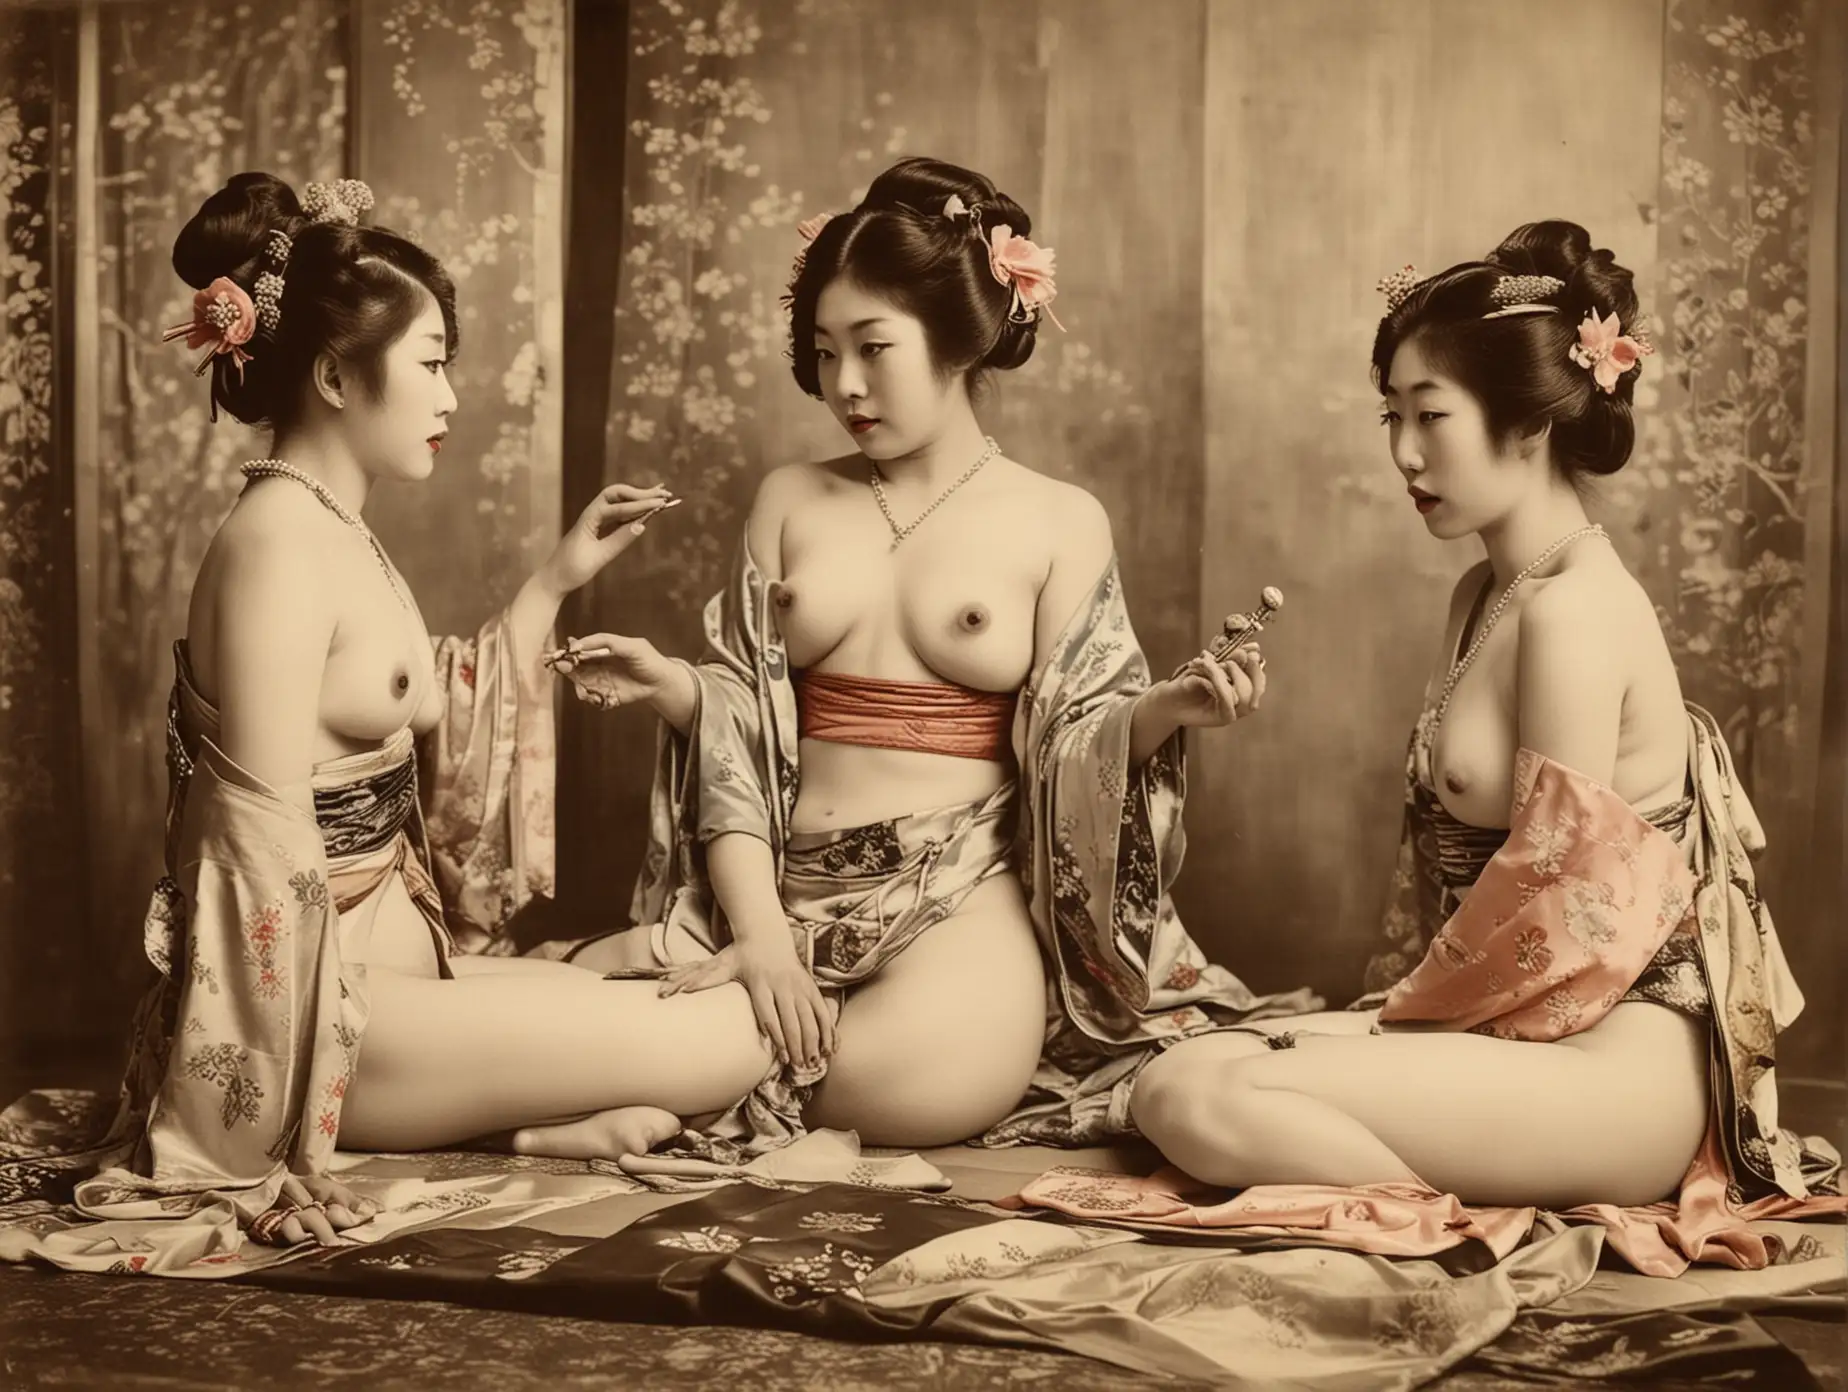 Sensual Japanese Courtesans Comparing Nude in Yoshiwara Boudoir 1920s Vintage Photo